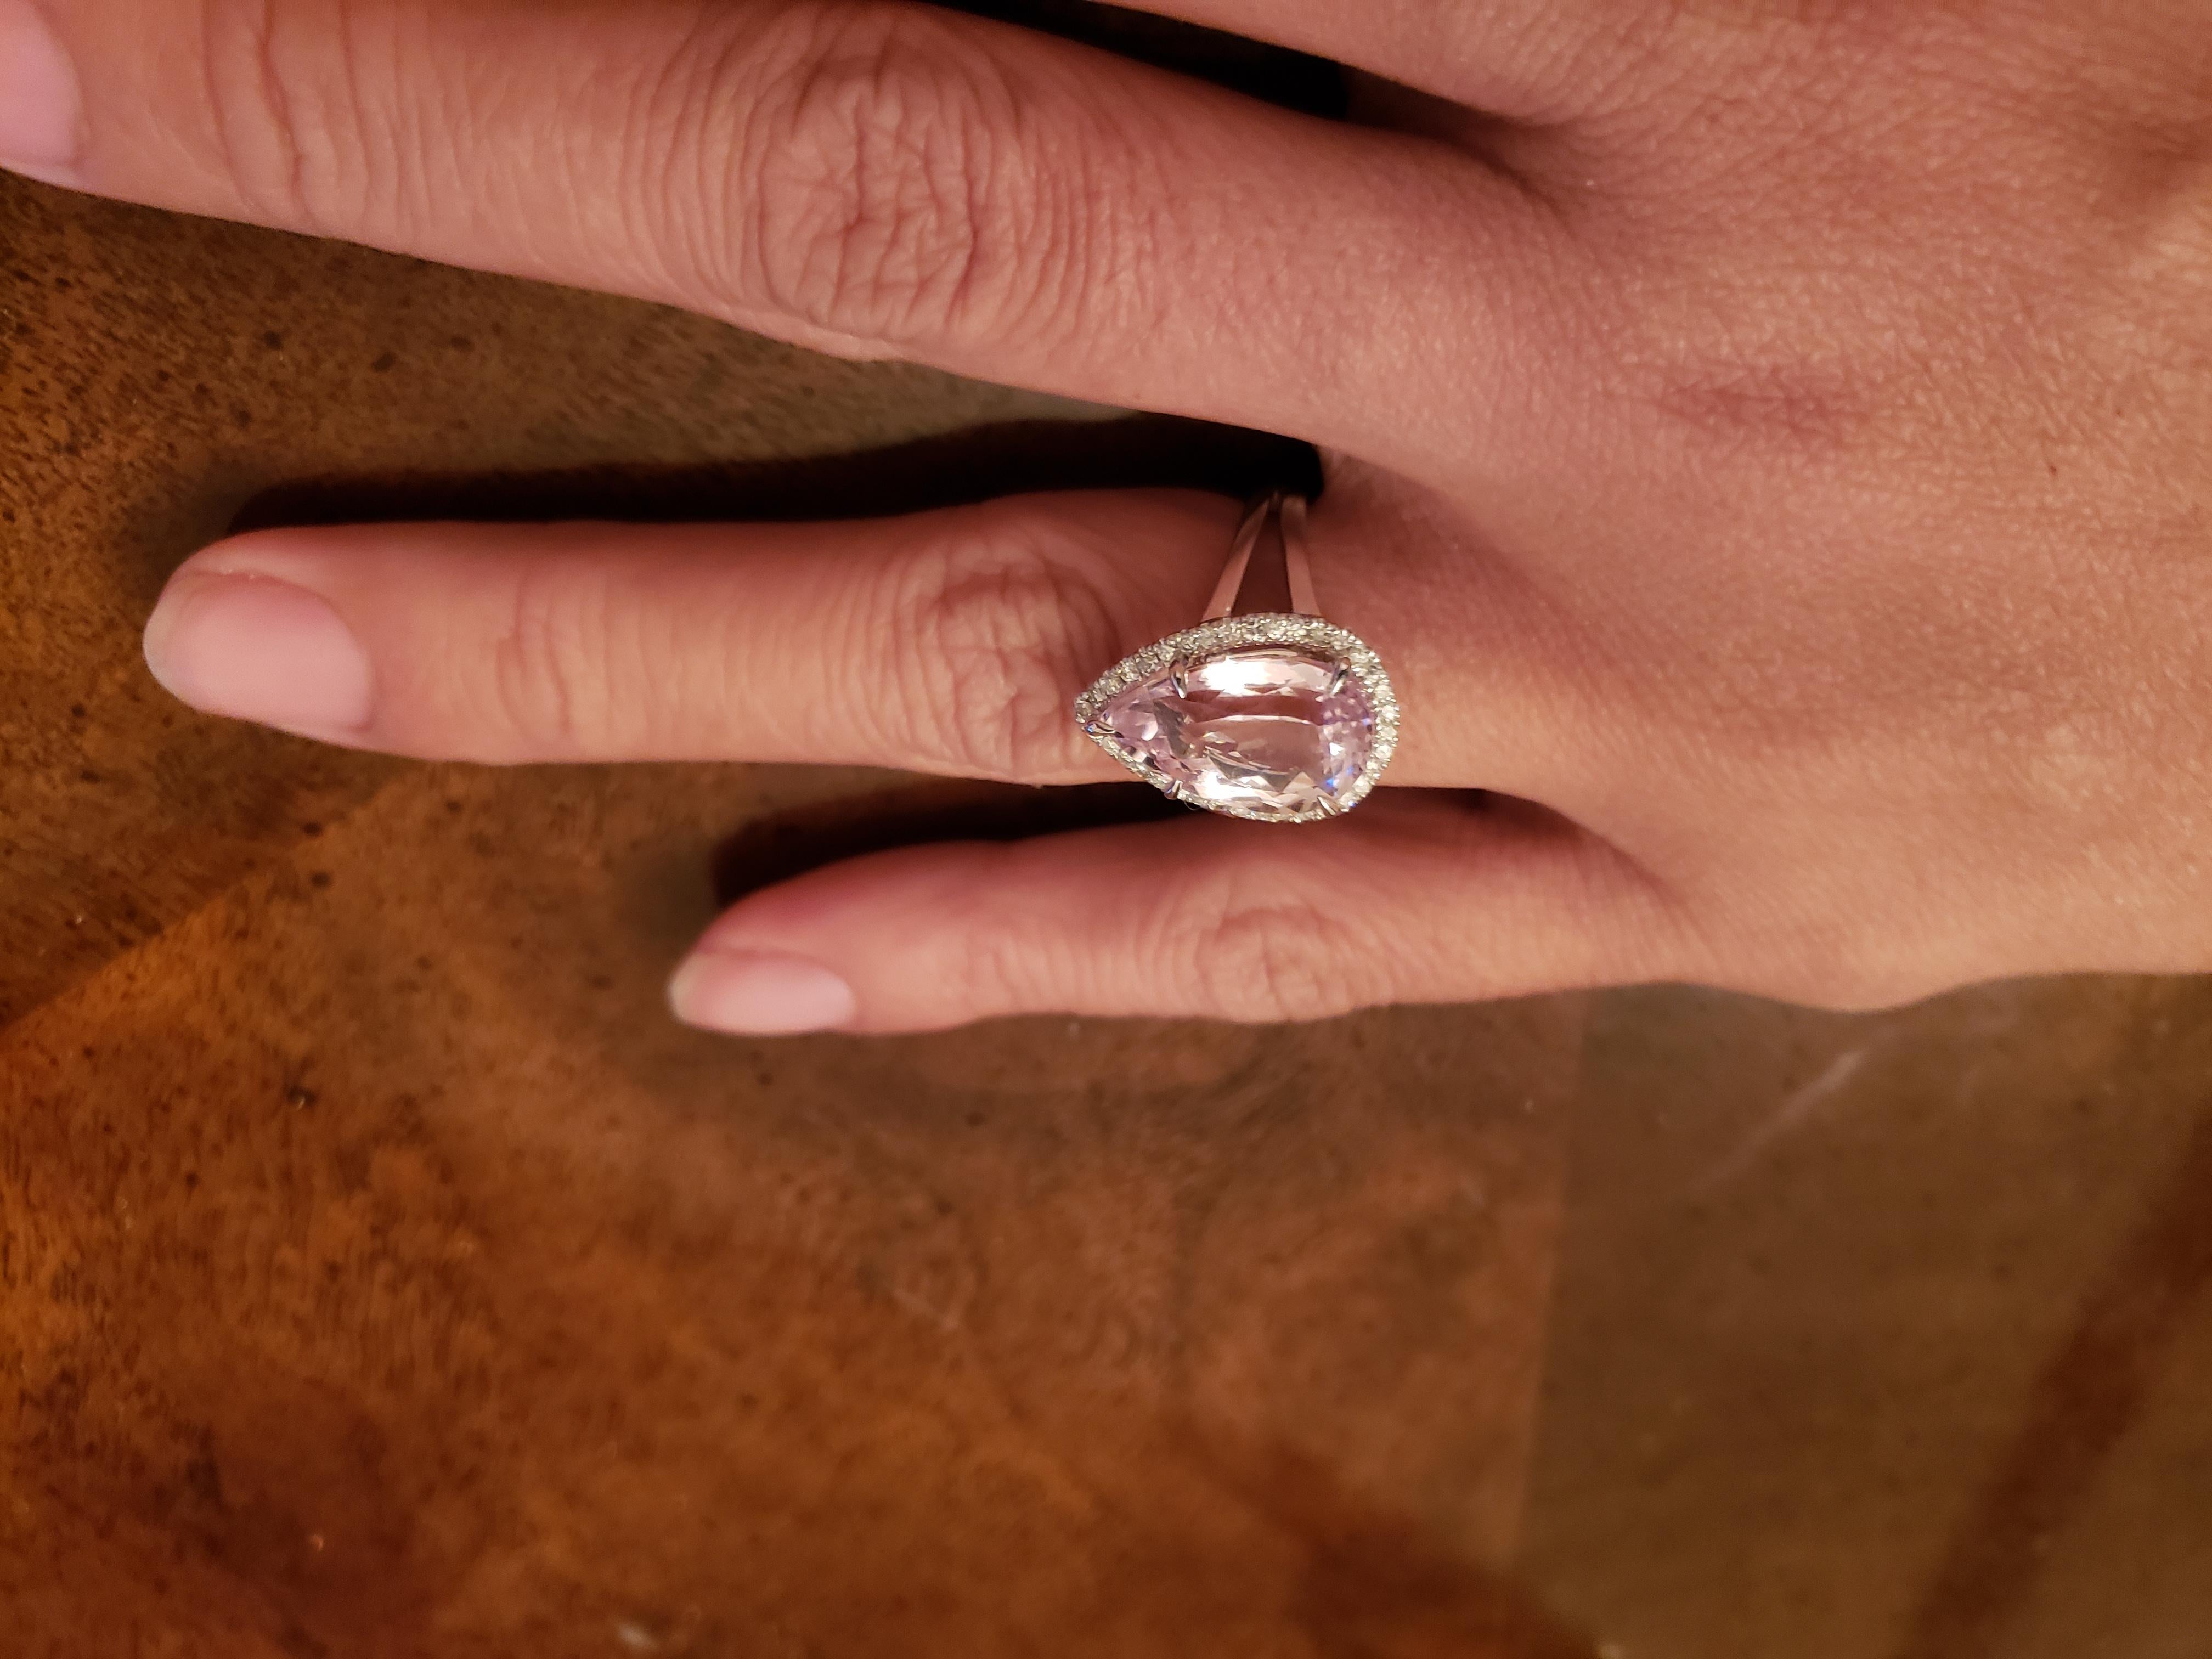 Cette magnifique bague est ornée d'une pierre de Kunzite rose naturelle de 7,83 ct, certifiée pour l'authenticité, sertie dans un magnifique anneau d'or blanc 14k. La bague est rehaussée de diamants étincelants qui ajoutent à son allure. La marque